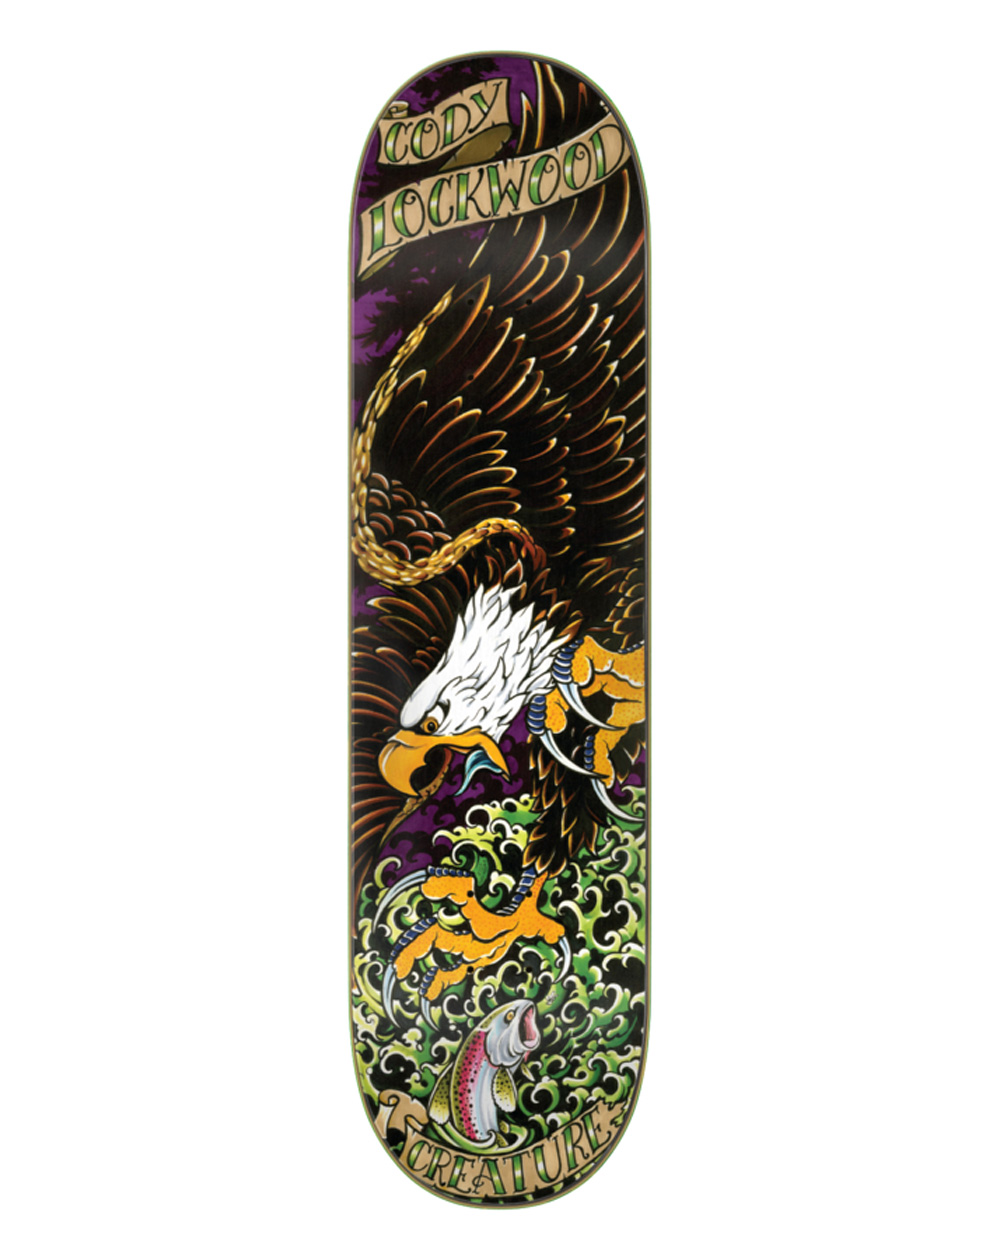 Creature Plateaux Skateboard Lockwood Beast of Prey 8.25"